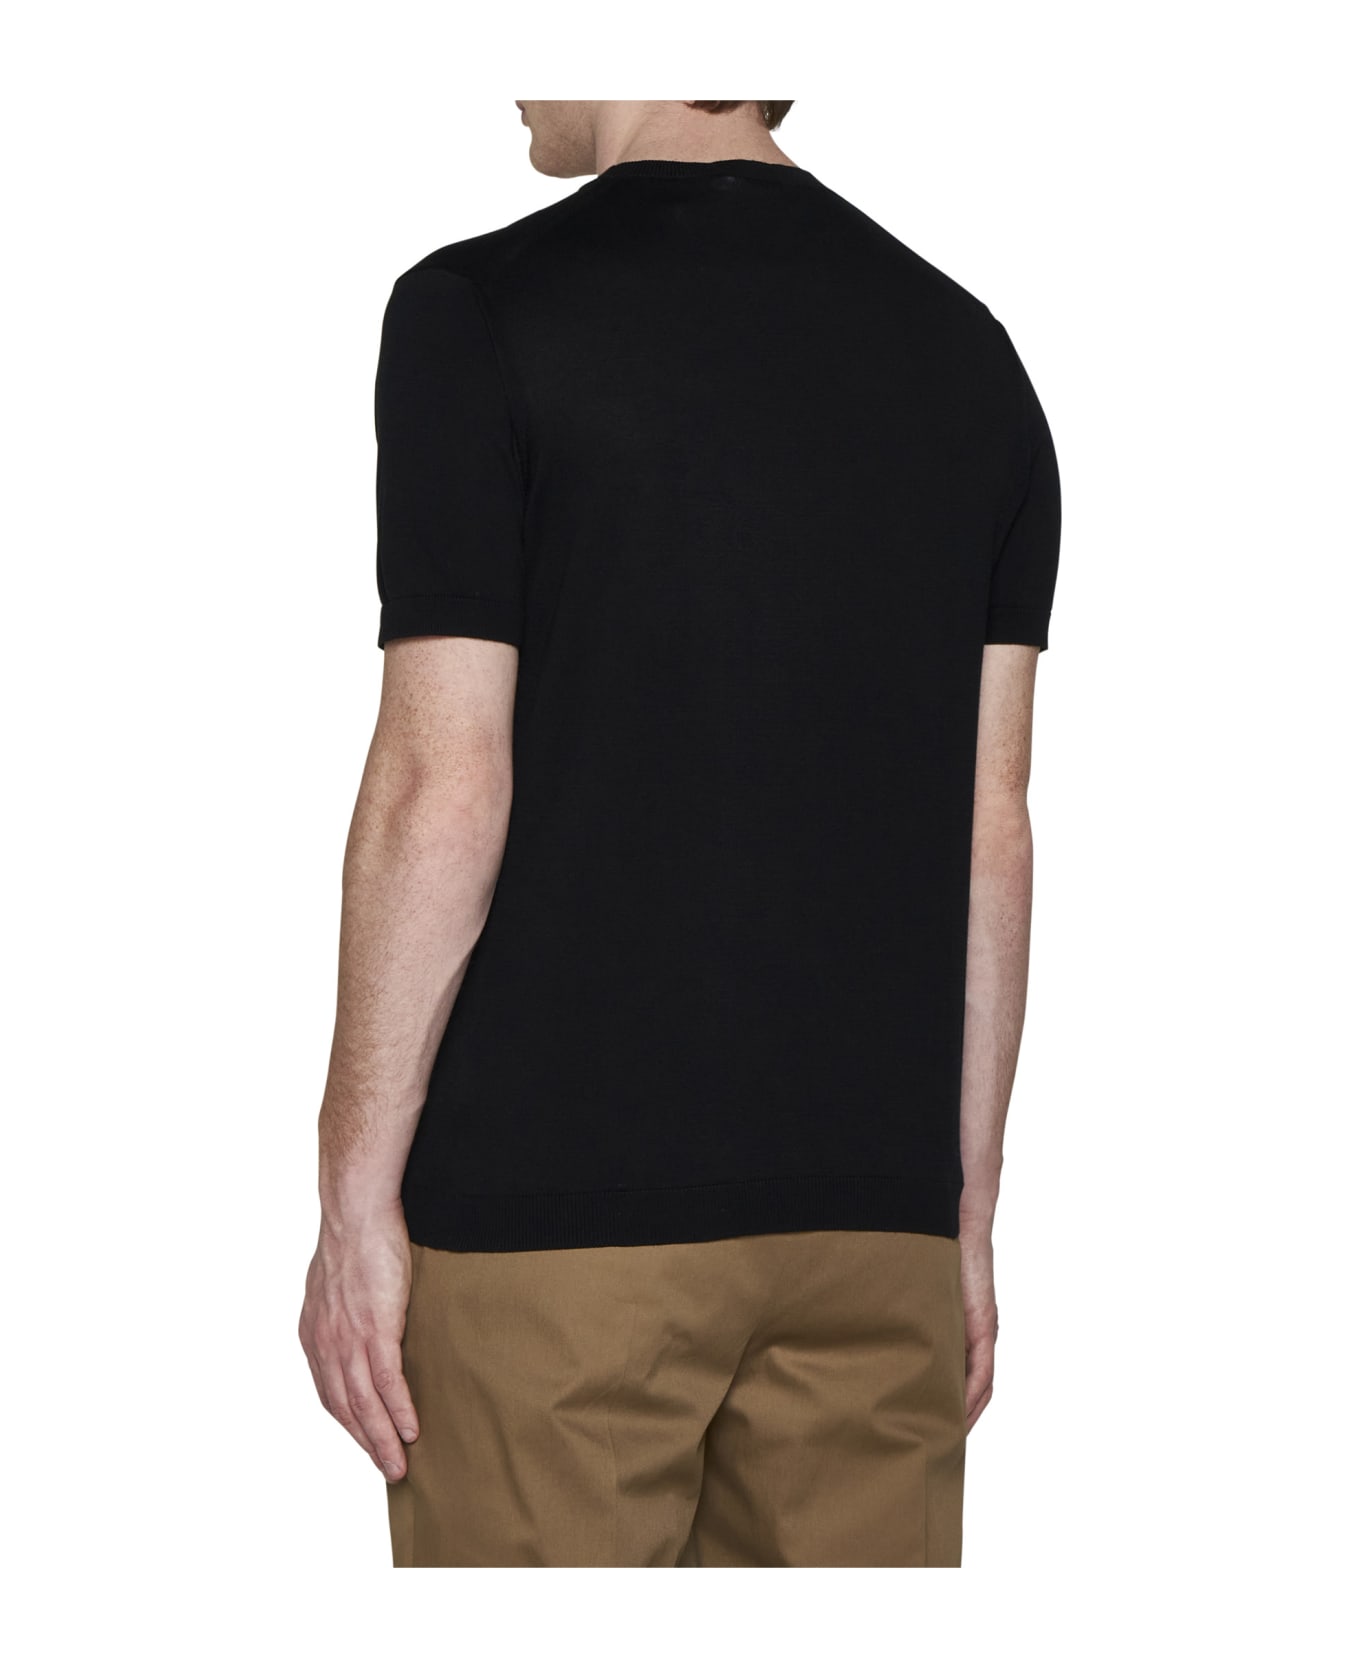 Tagliatore T-shirt - Black シャツ